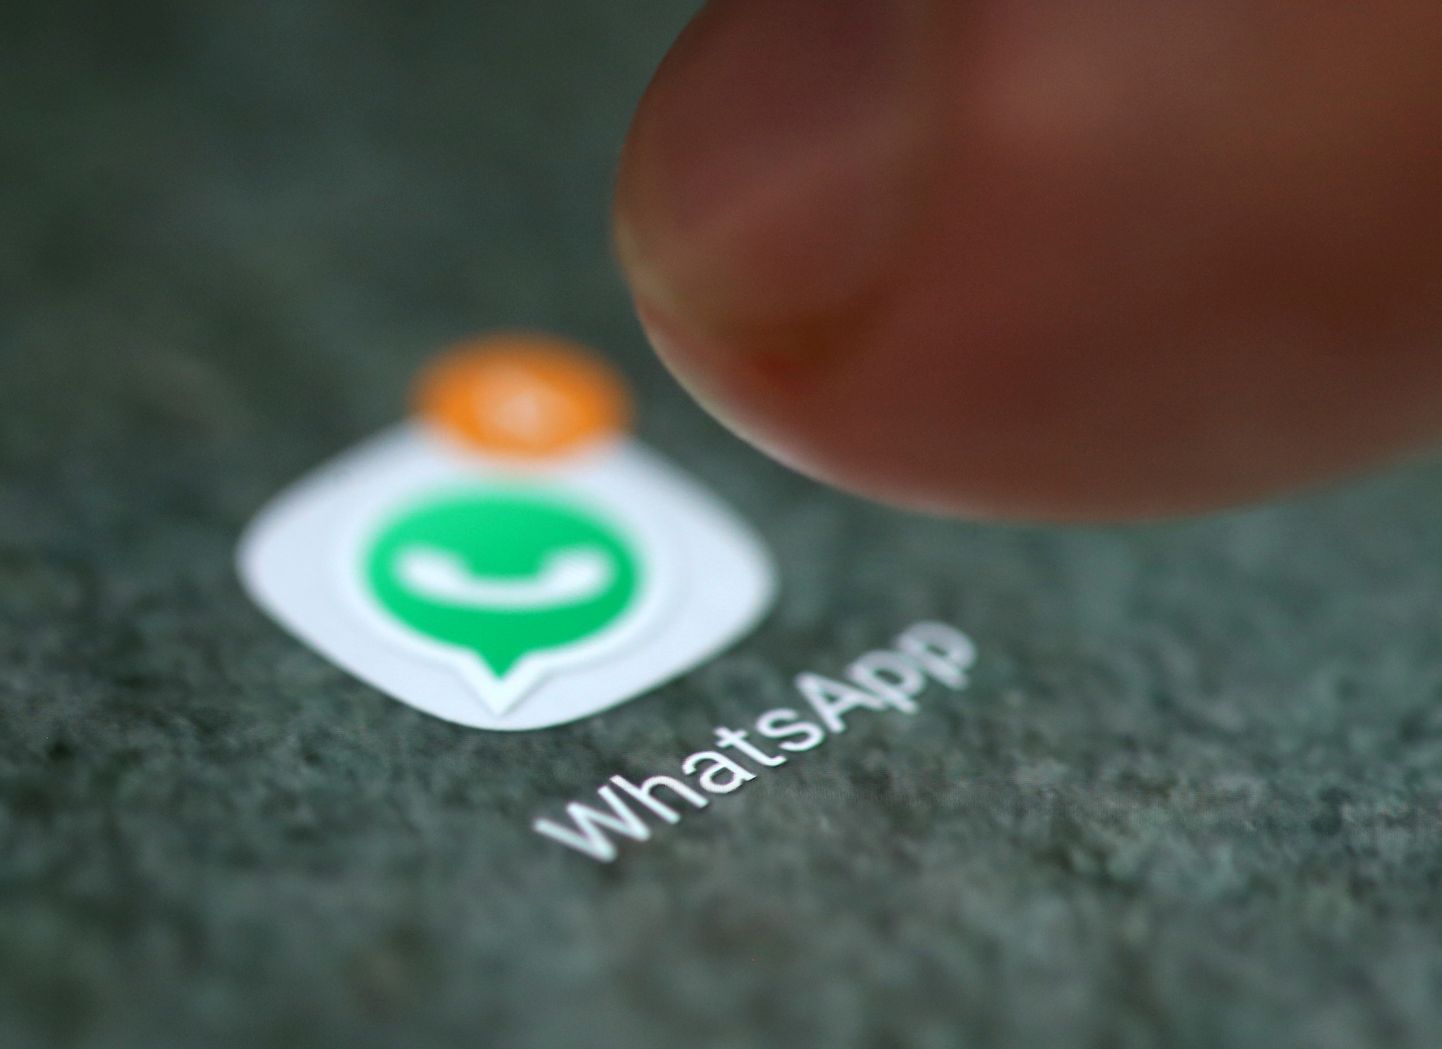 Kui 18-29-aastaste seas märkis Whatsapp'i enda lemmikuks 14 protsenti, siis 60-74-aastaste seas oli see number 24.